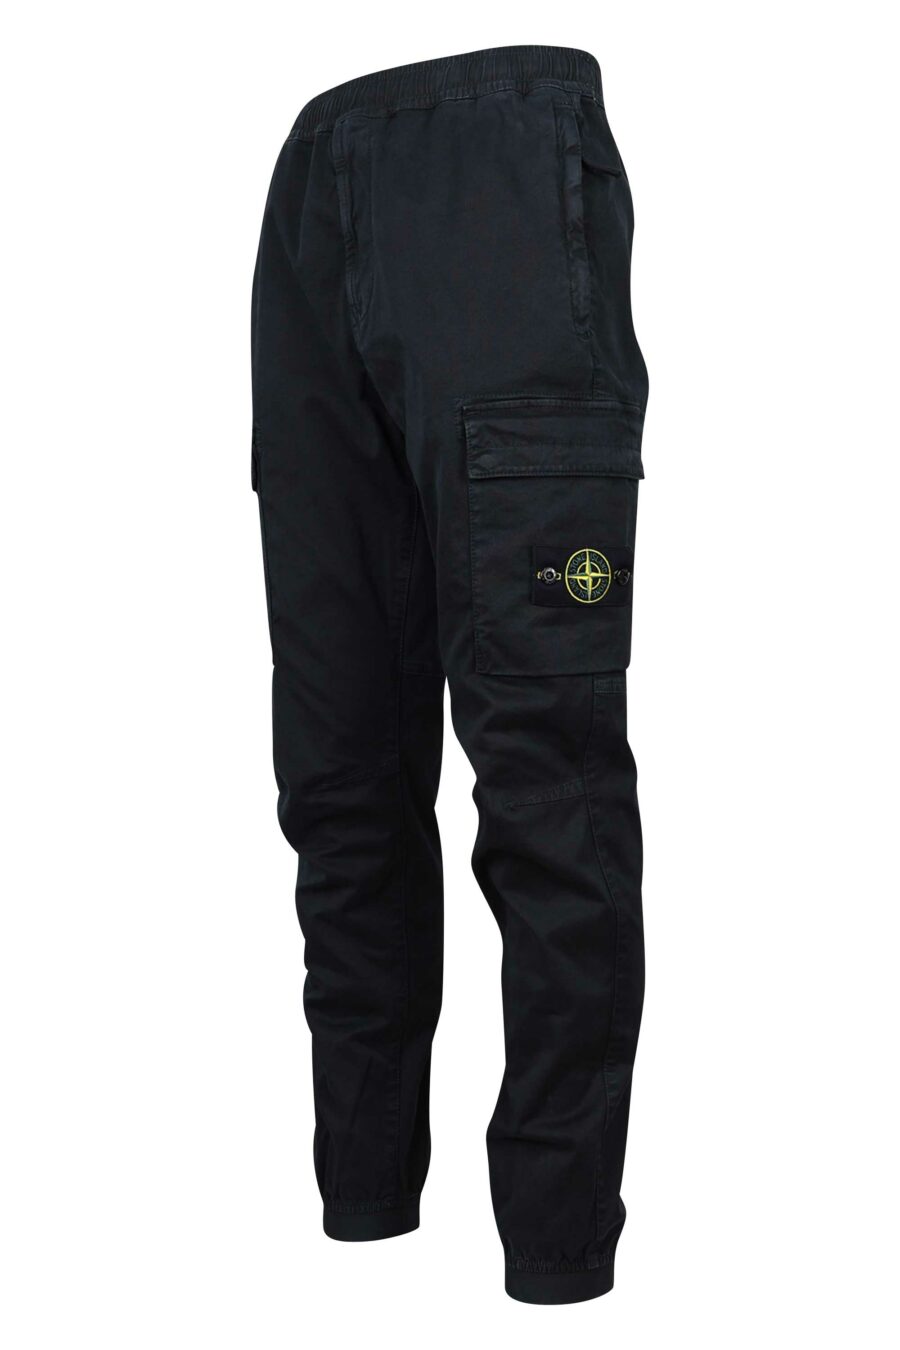 Pantalón negro con logo lateral parche - 8052572723292 1